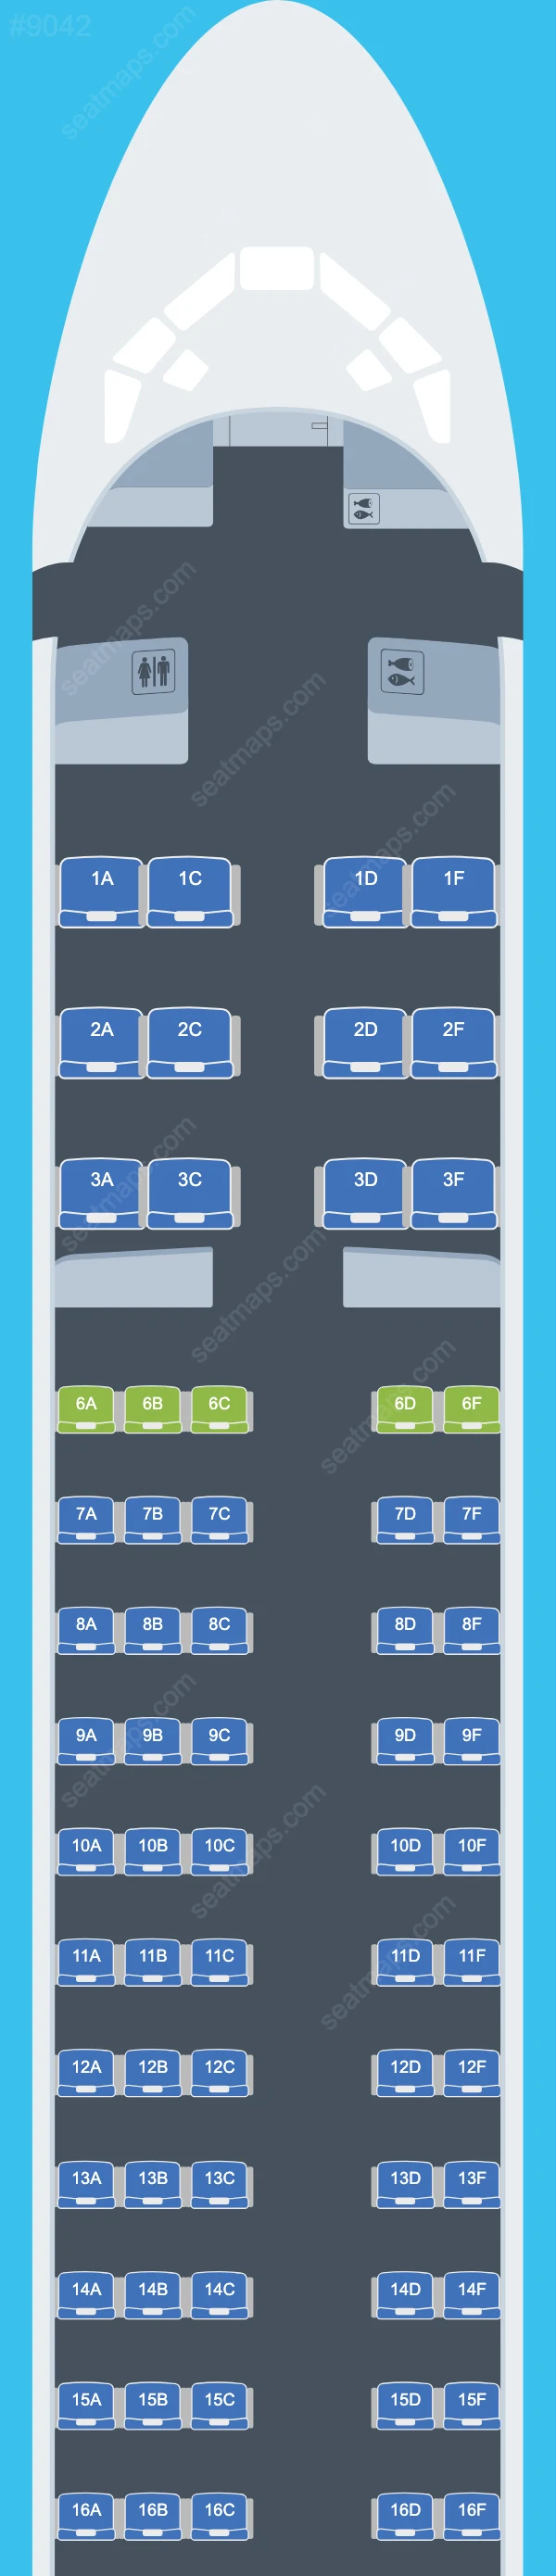 Plans des sièges de l'avion McDonnell Douglas MD-80 de Dana Air MD-83